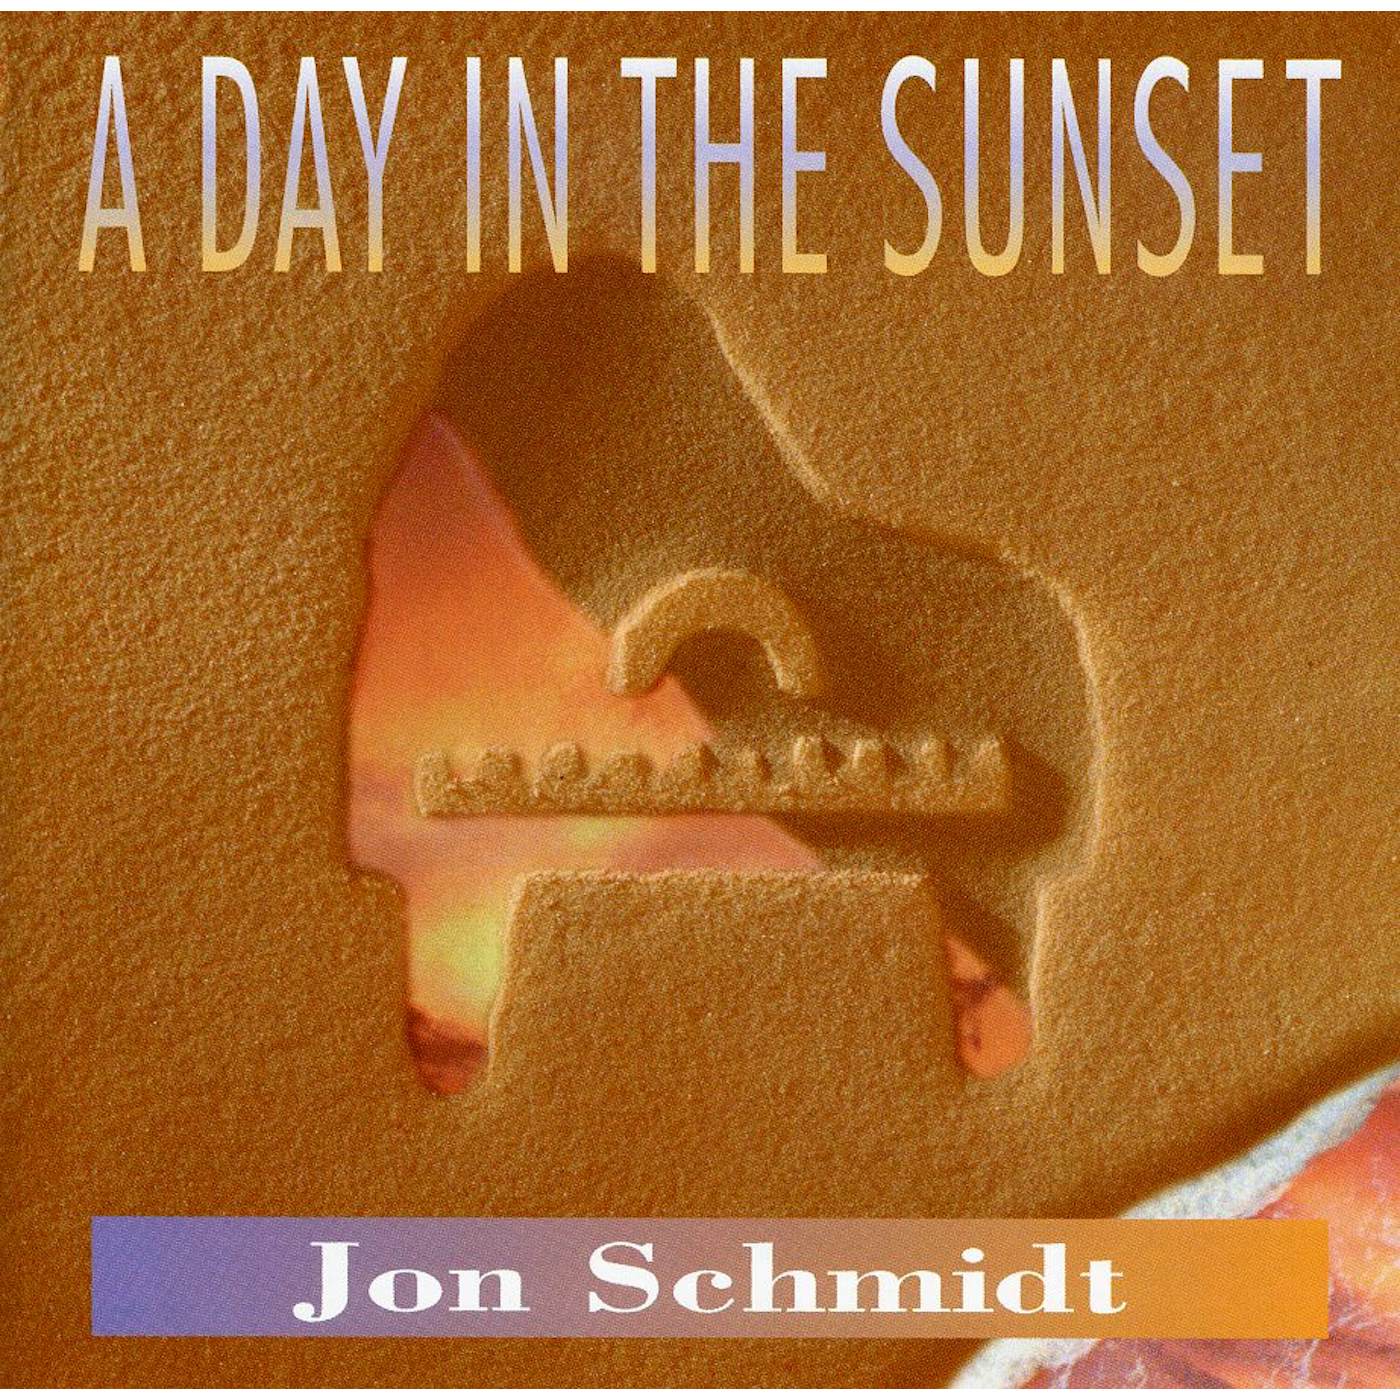 Jon Schmidt DAY IN THE SUNSET CD